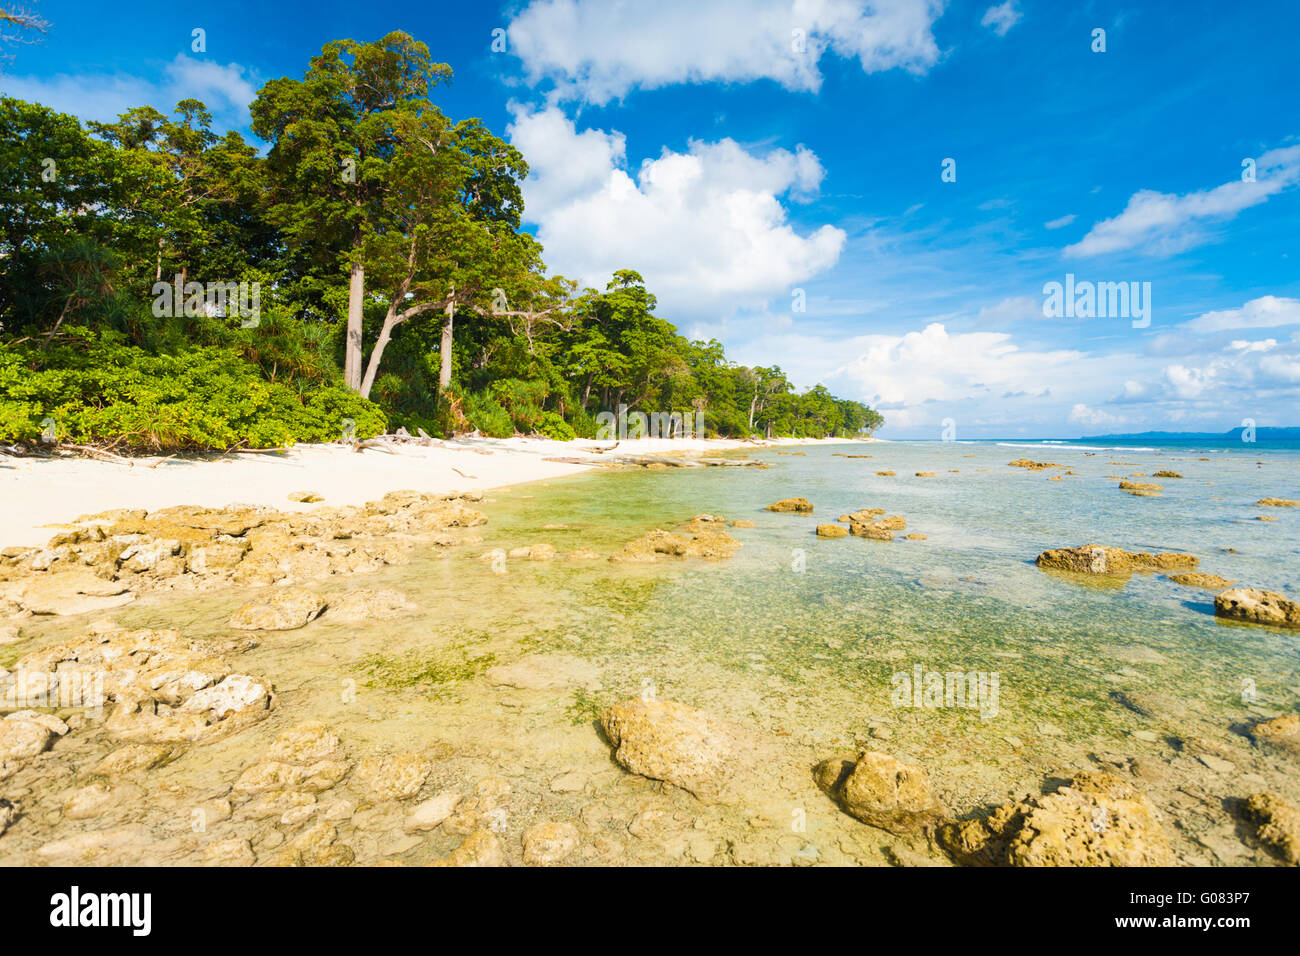 La bassa marea rocce incontaminata spiaggia incontaminata foresta Foto Stock